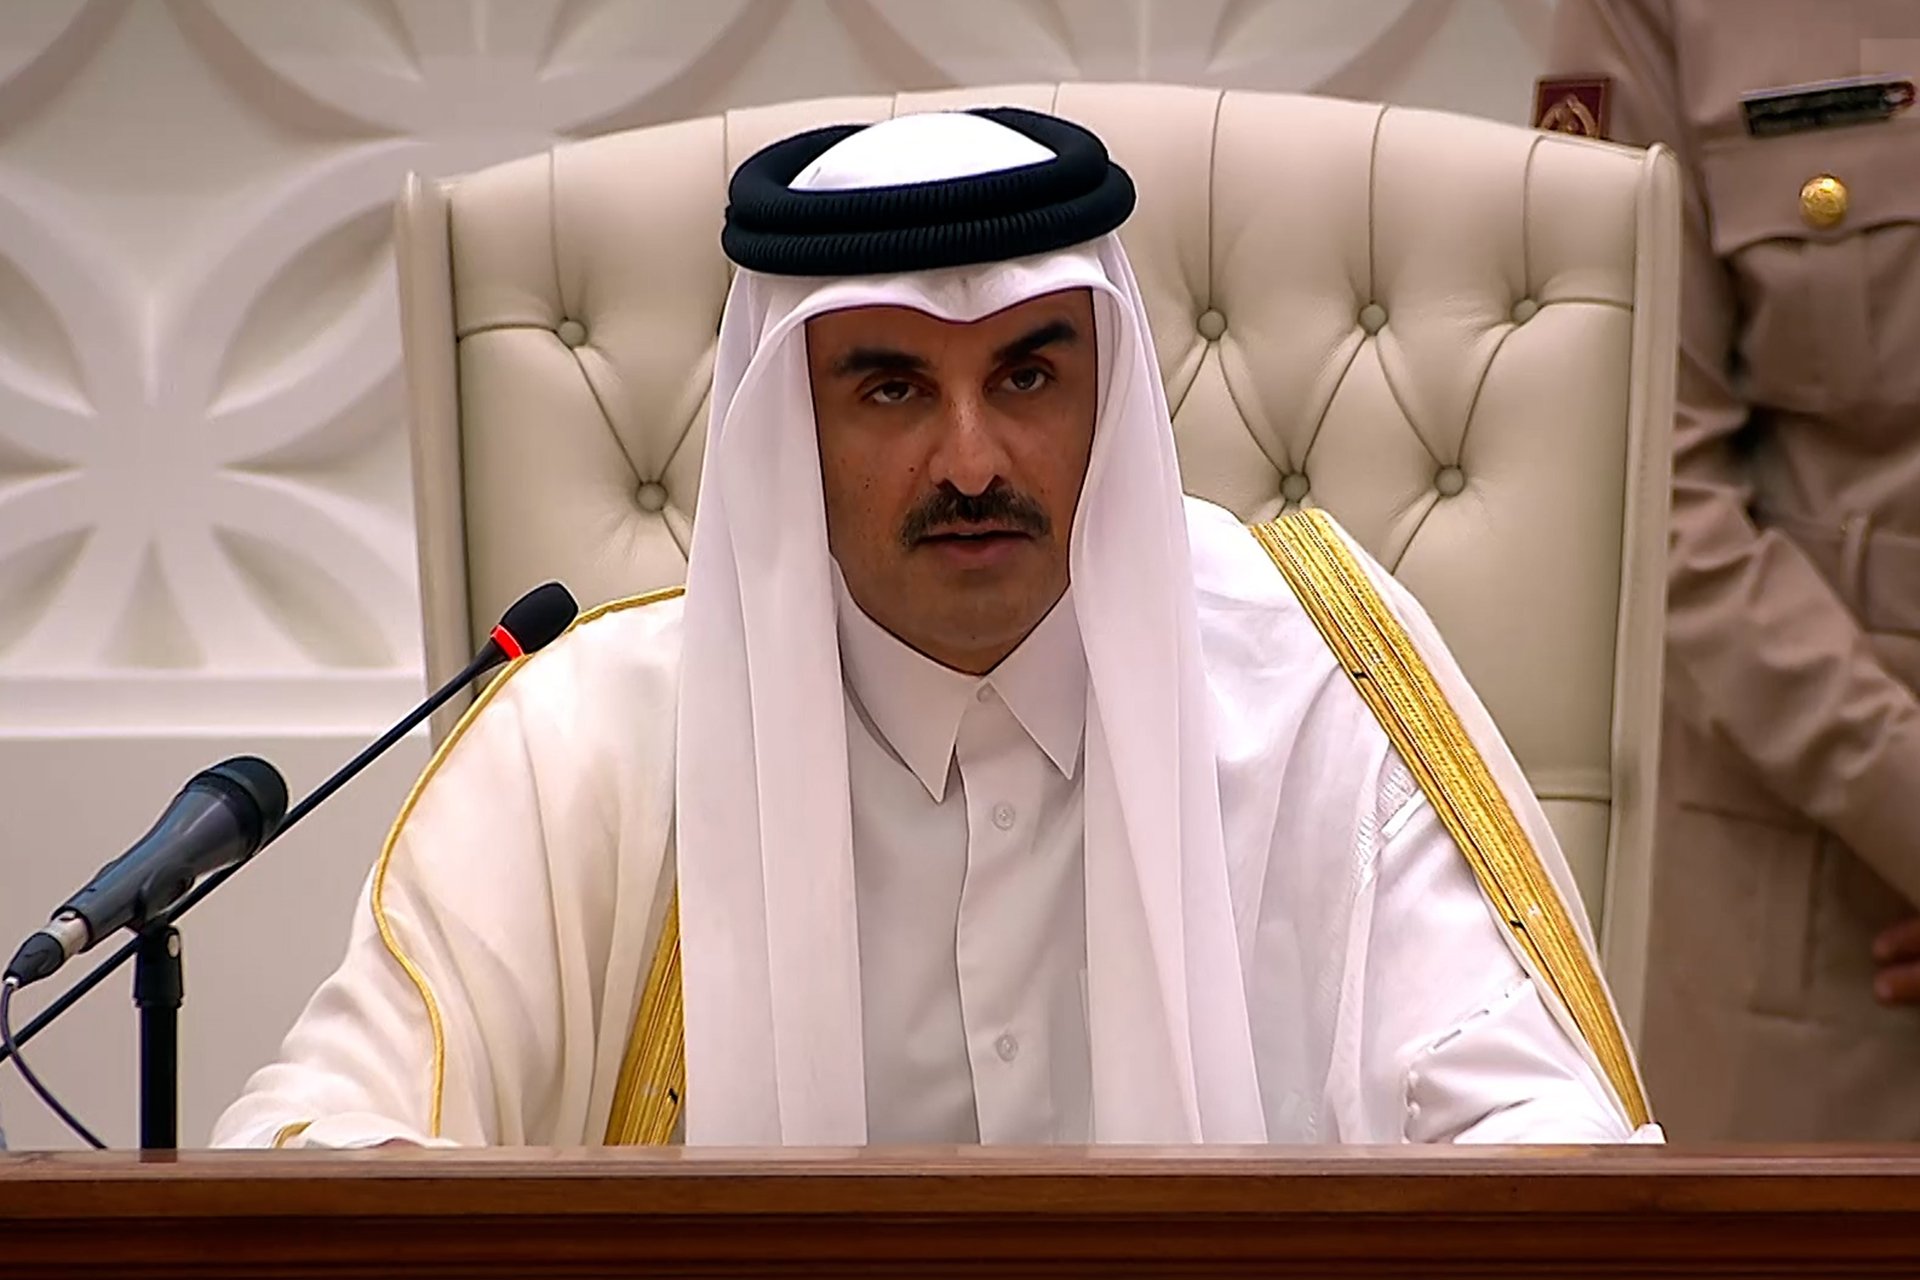 أمير قطر يبحث مع الرئيس الإندونيسي الوضع في الأراضي الفلسطينية | أخبار – البوكس نيوز